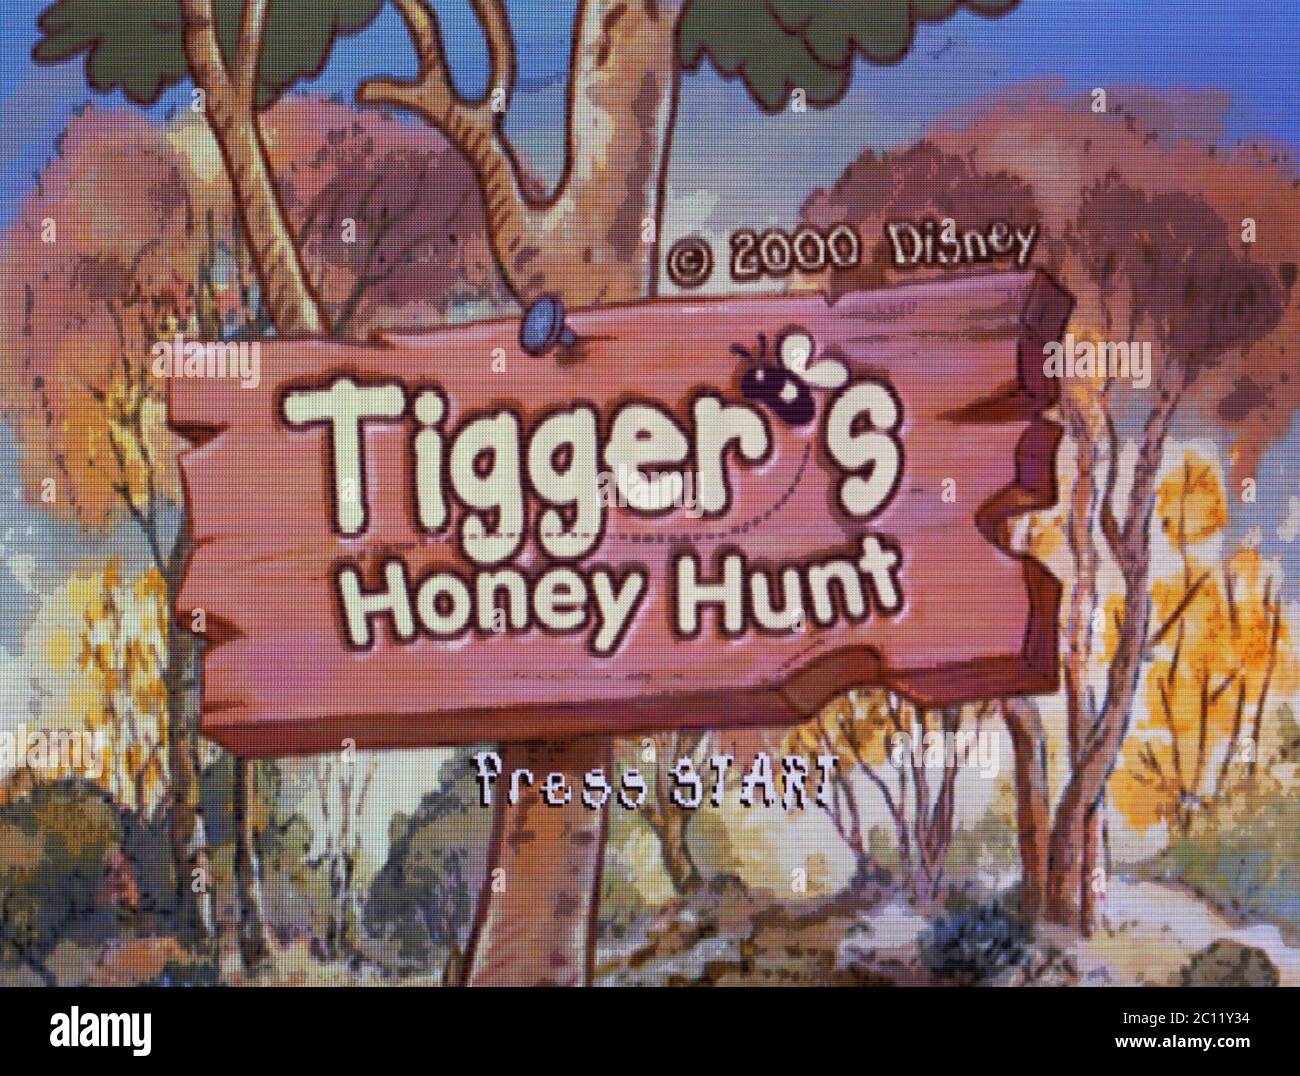 tigger's honey hunt nintendo 64